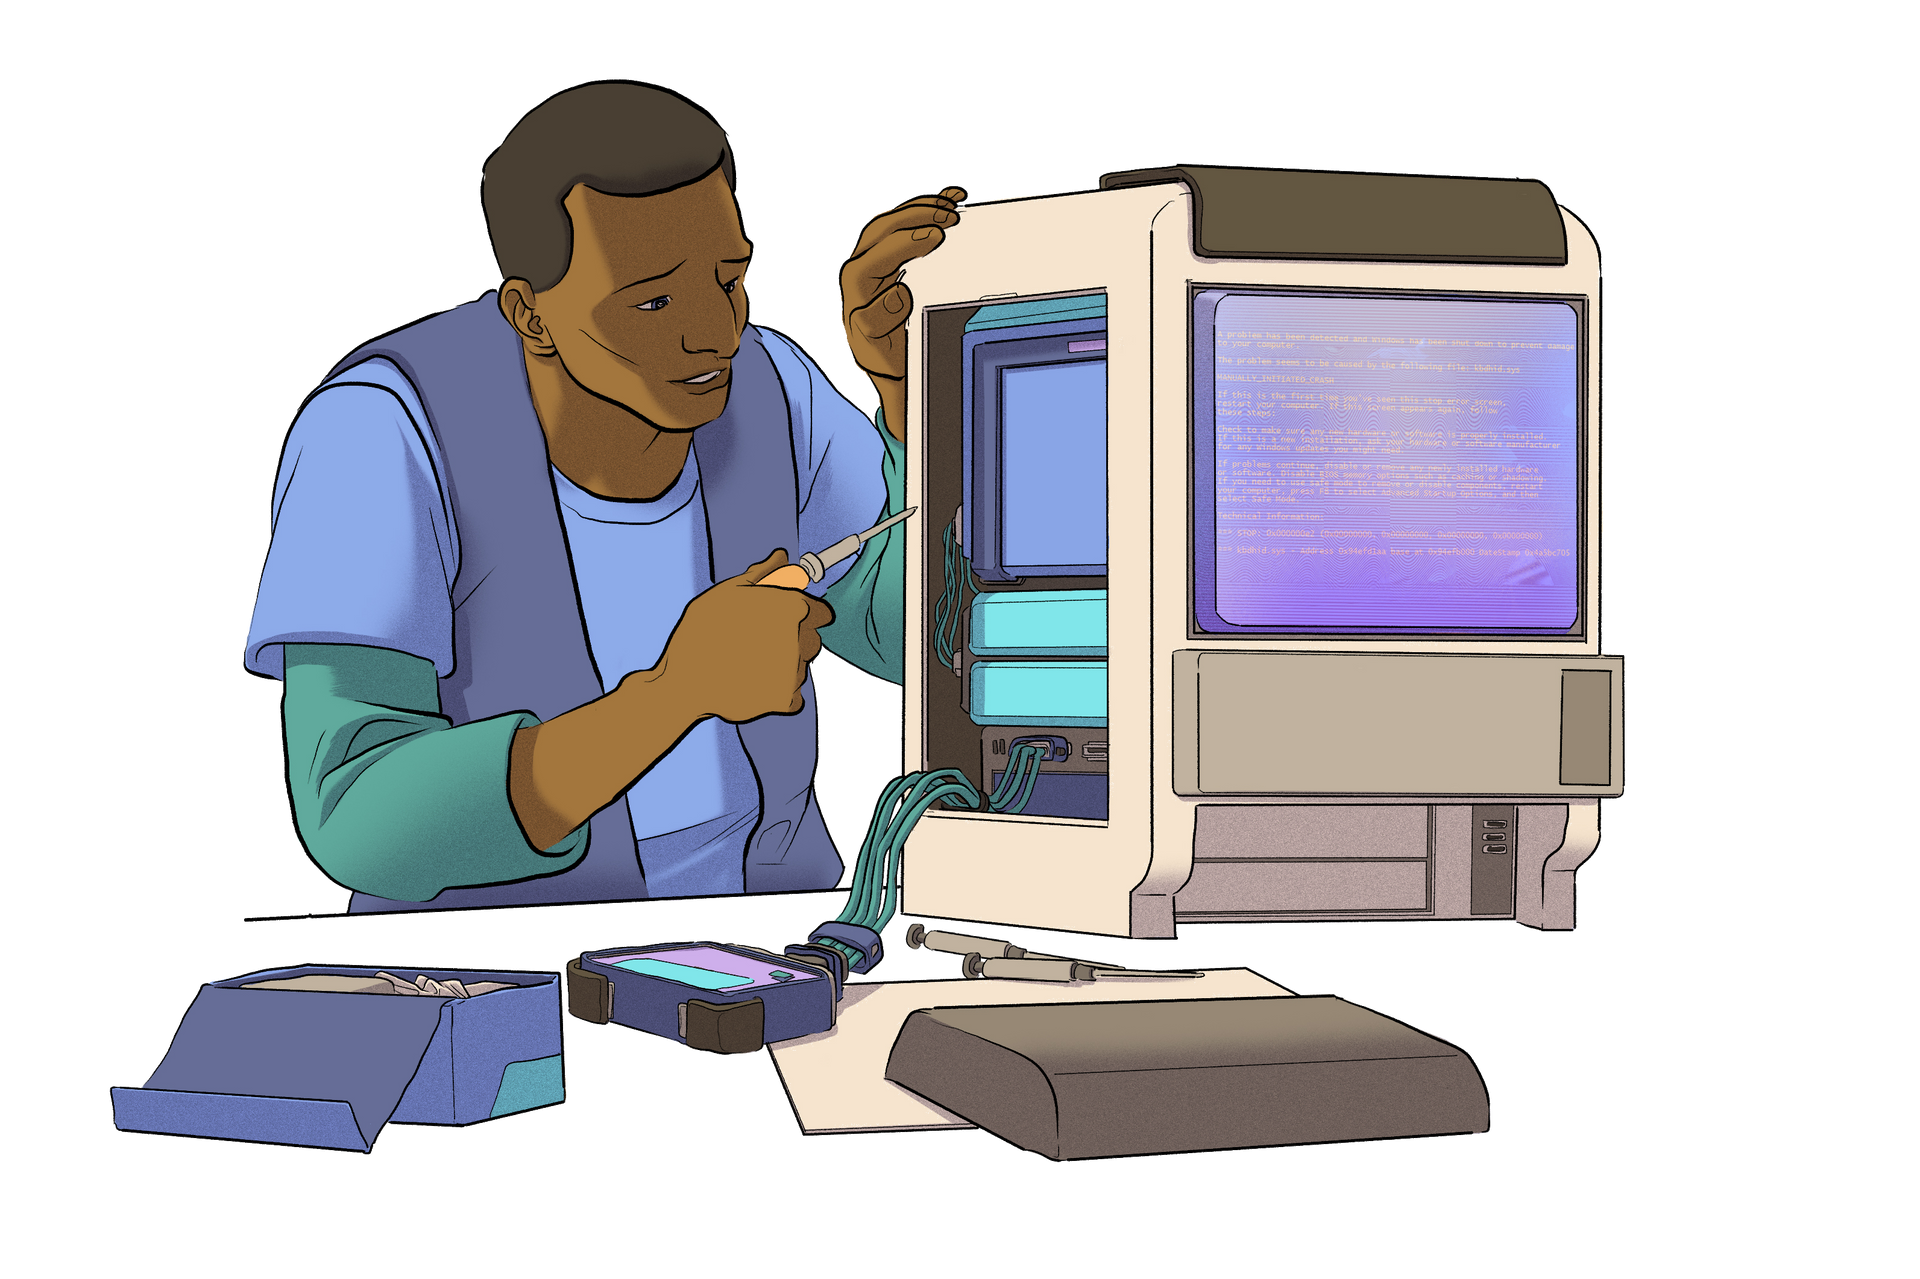 Ilustracija osobe koja radi na računalu.